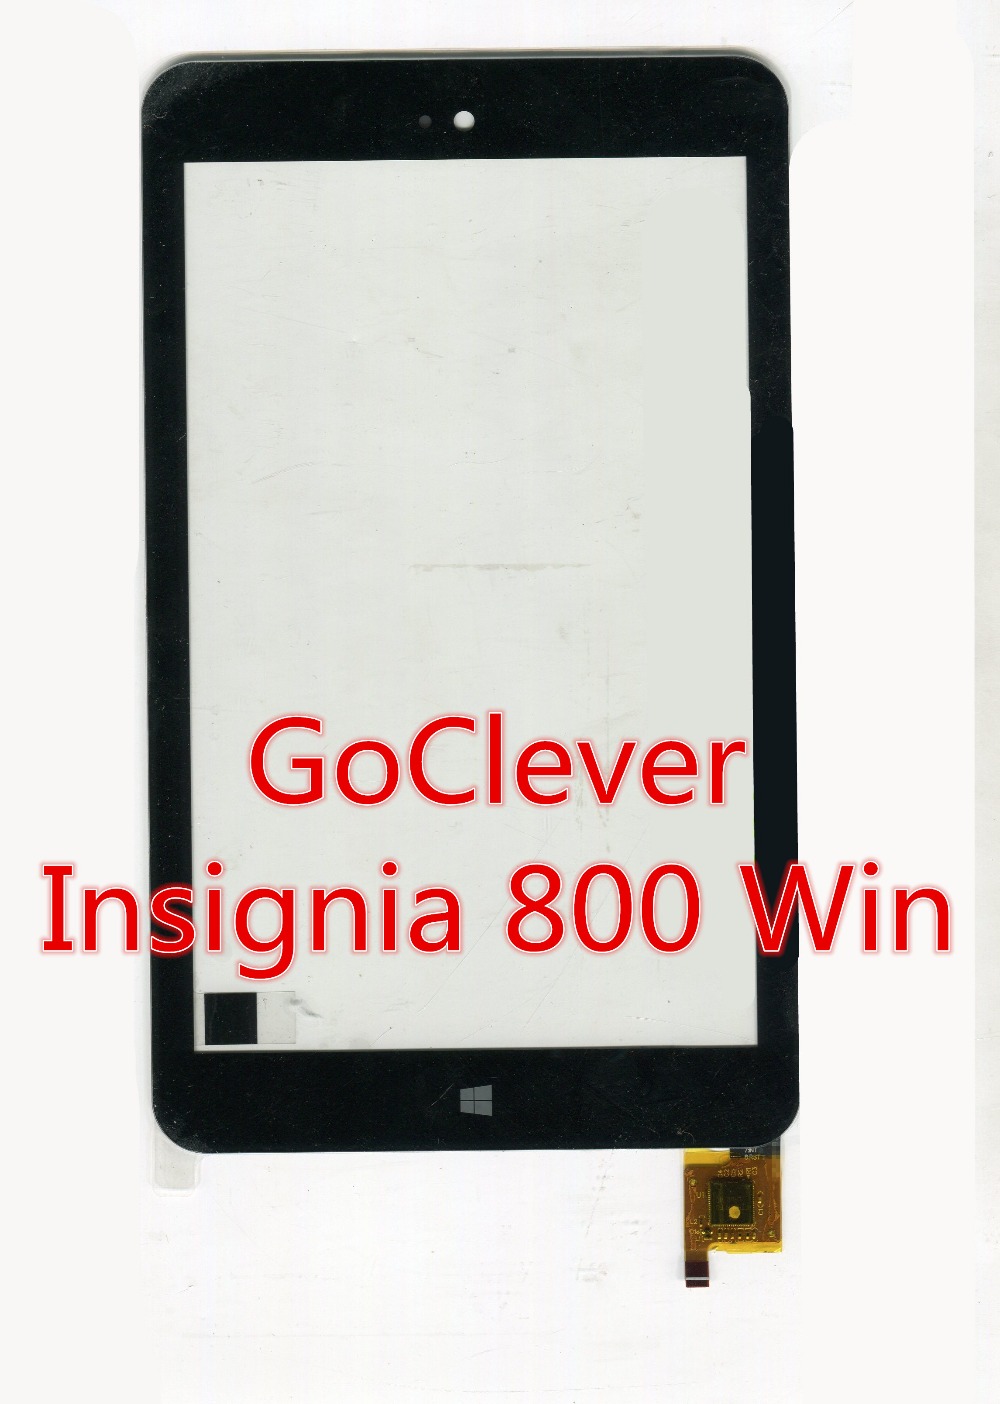  8   goclever insignia 800          